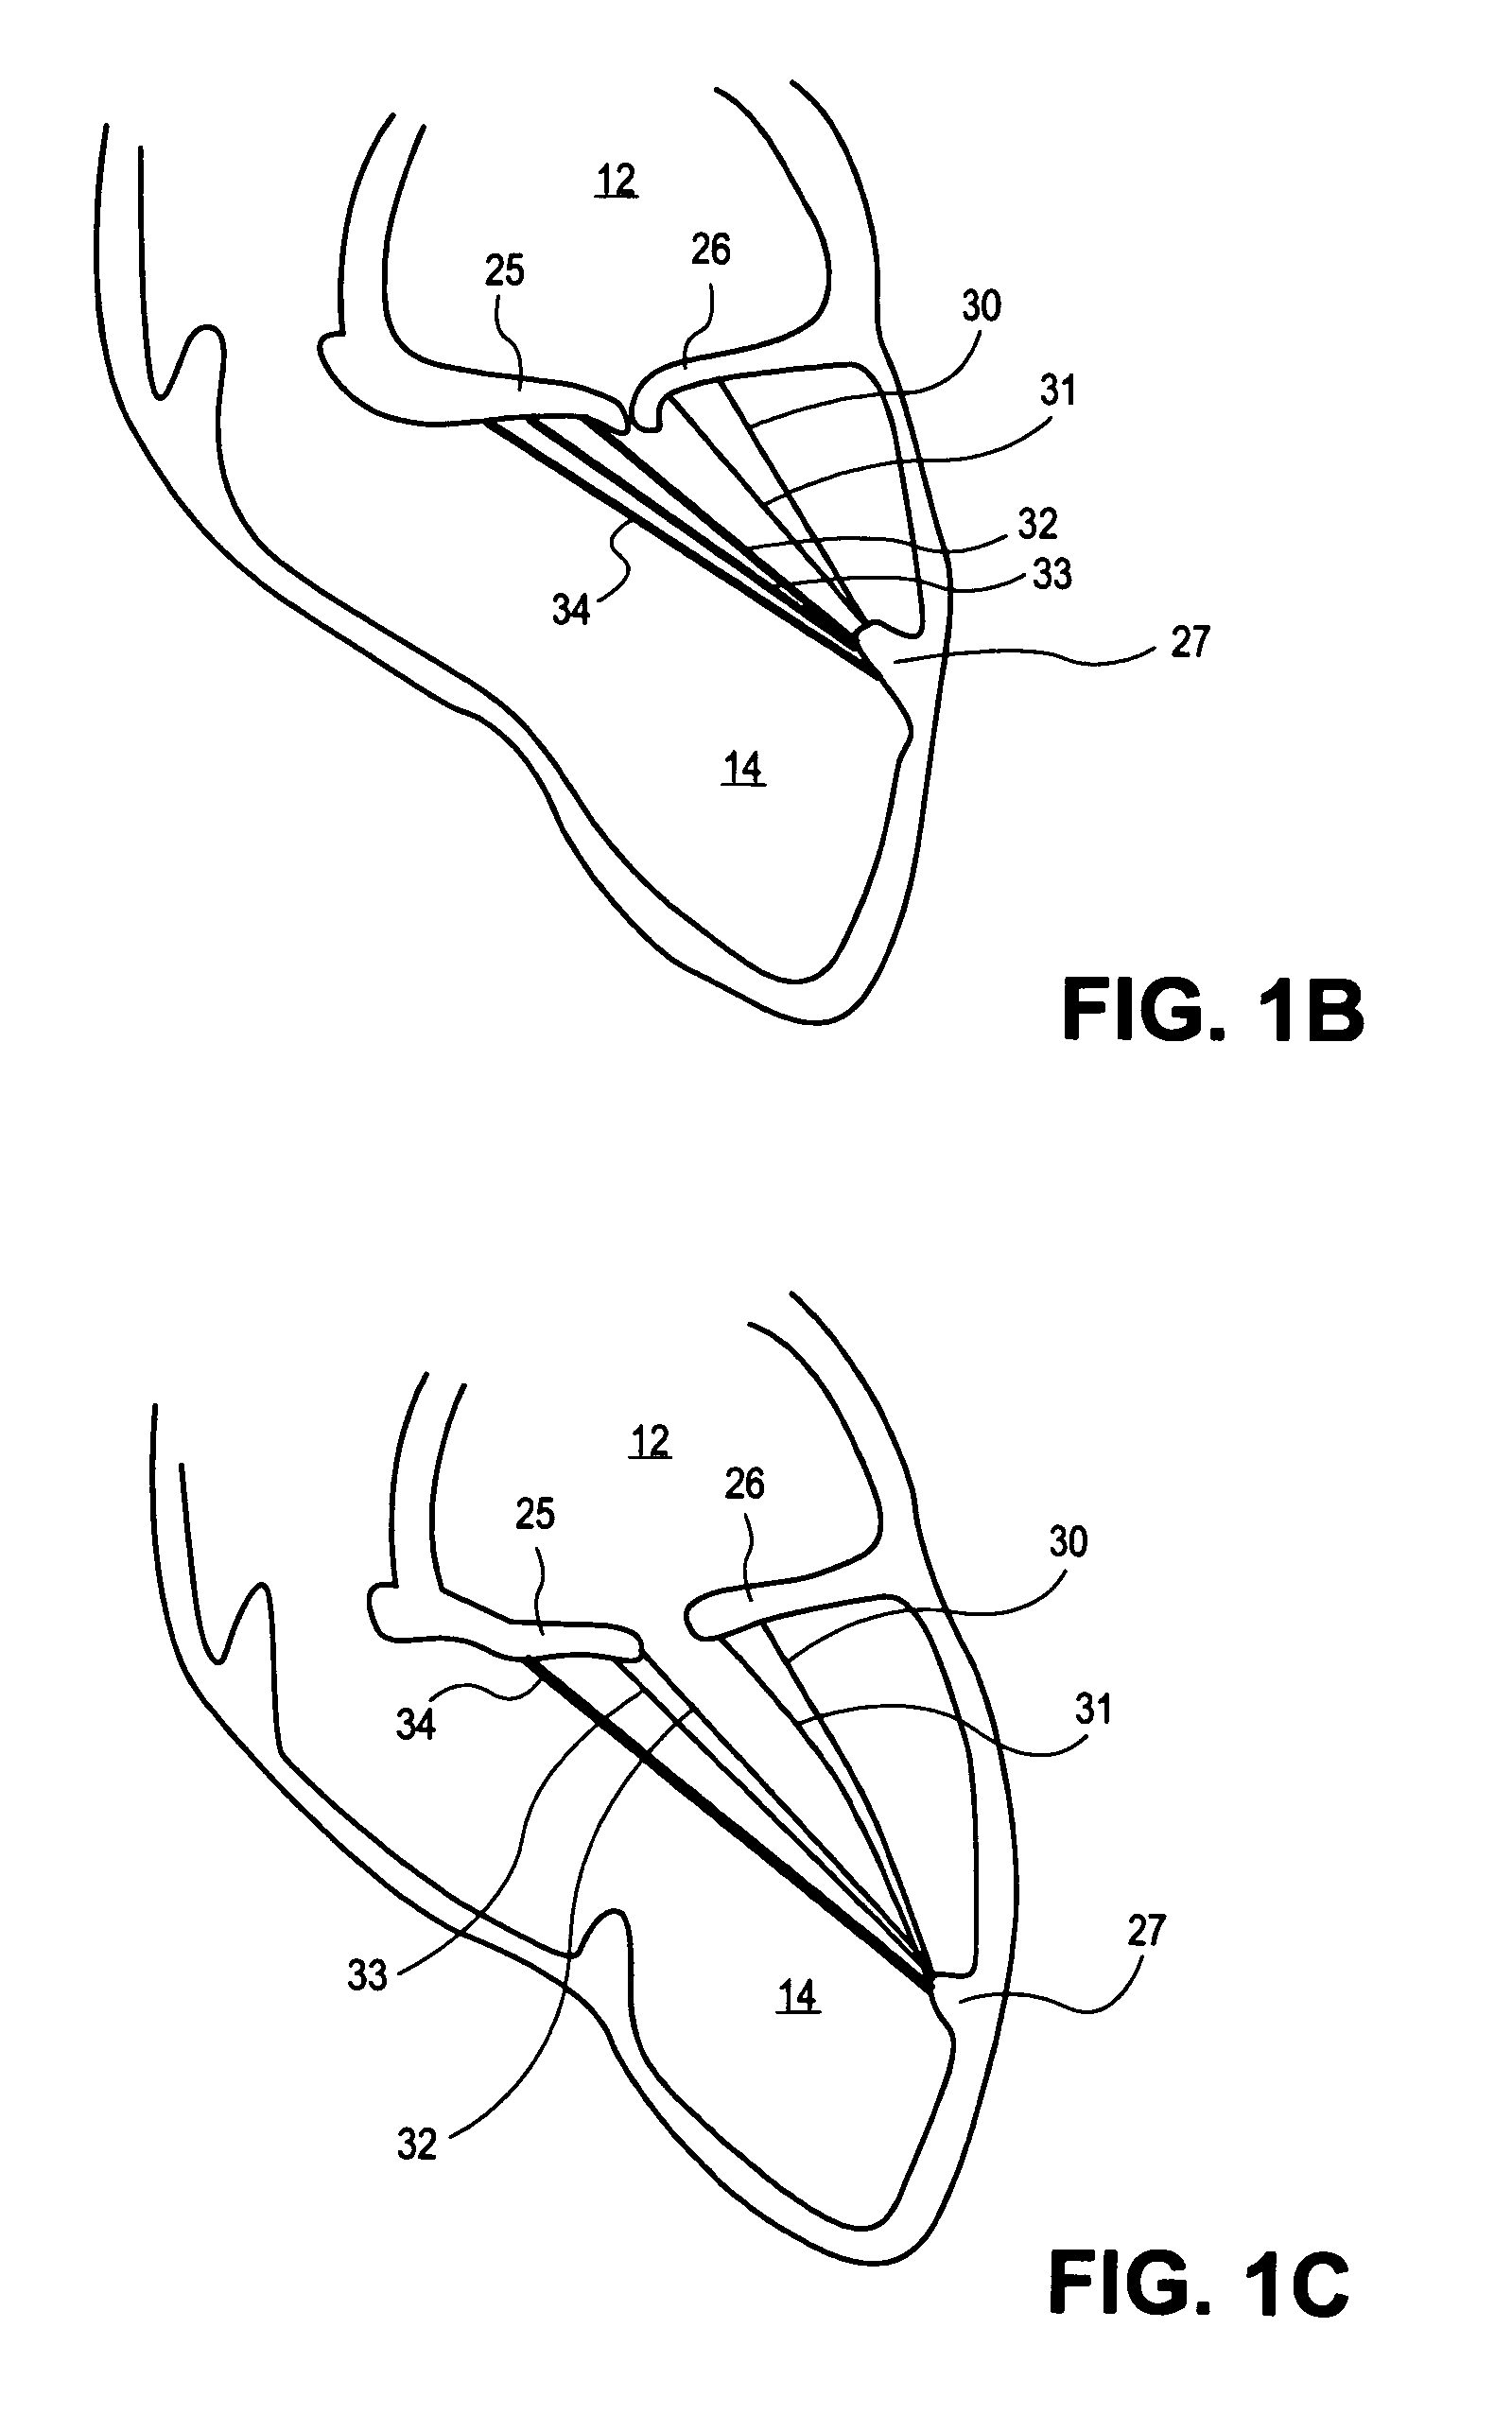 Heart valve chord cutter